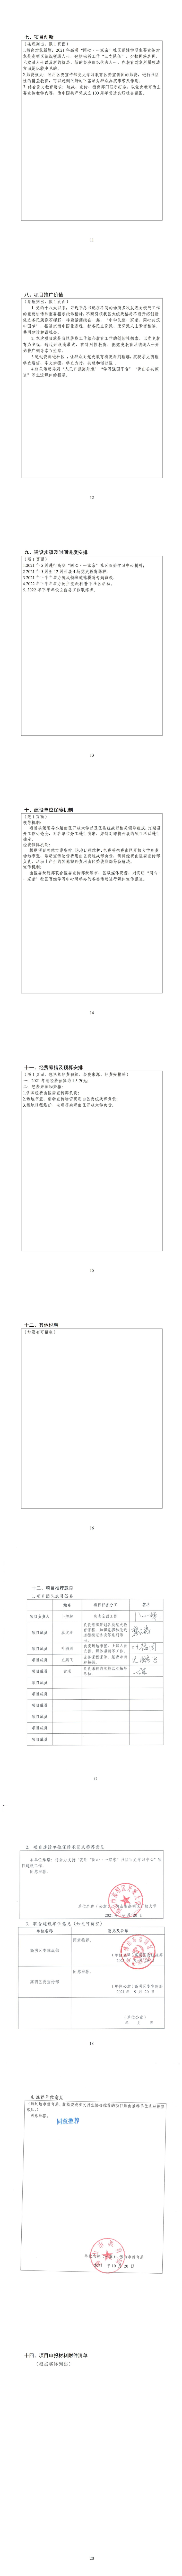 731-高明“同心·一家亲”社区百姓学习中心_01.jpg